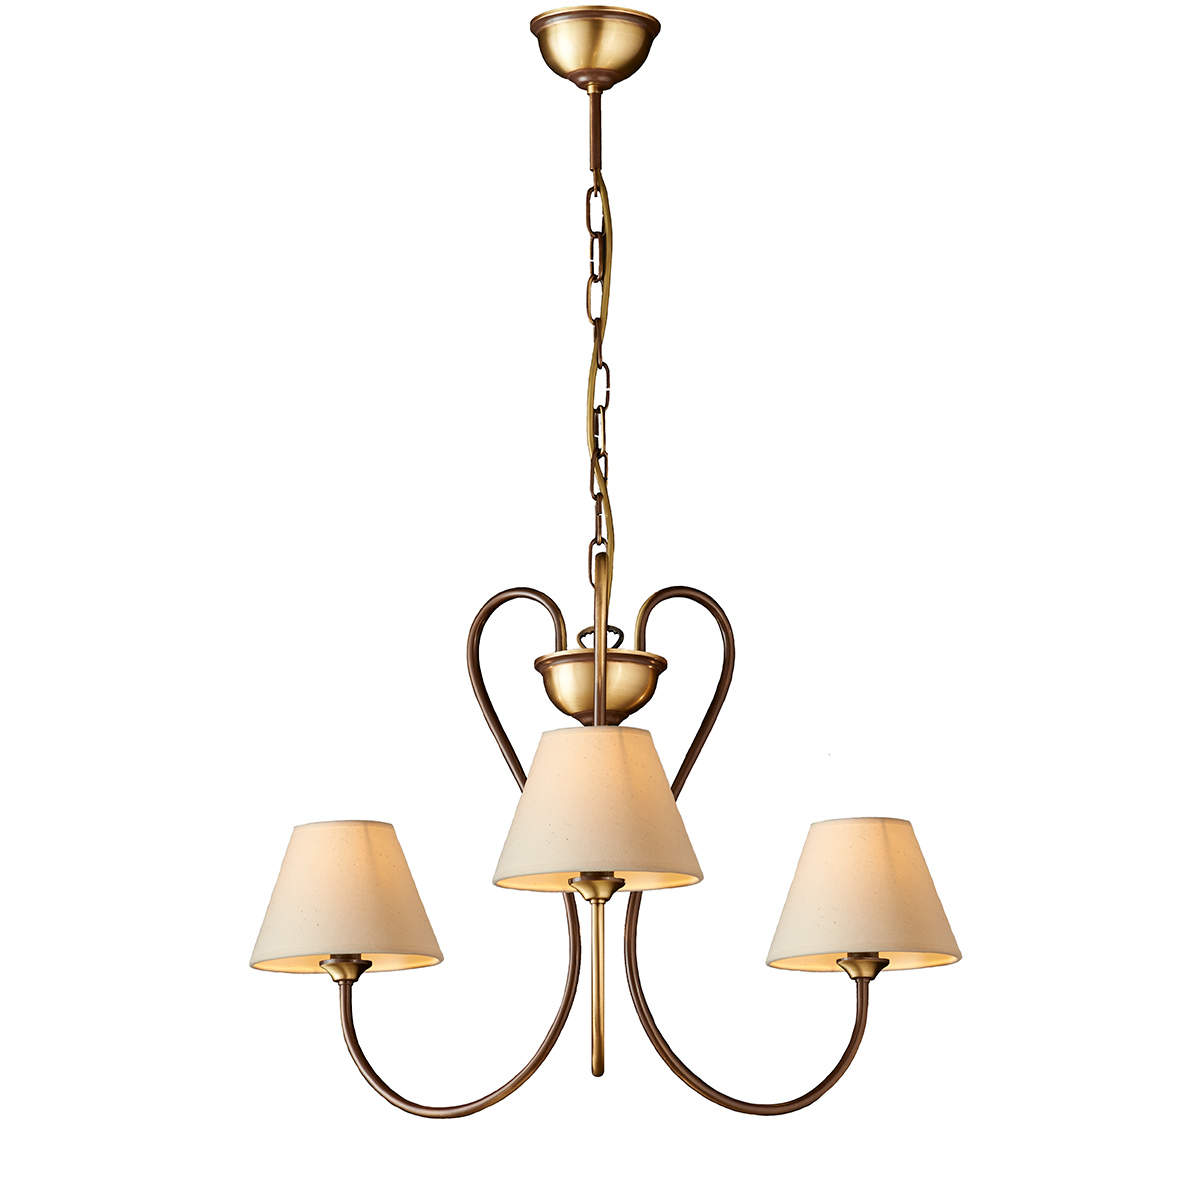 Κλασικό φωτιστικό με καπέλα ΝΑΞΟΣ-1 classic chandelier with lamp shades